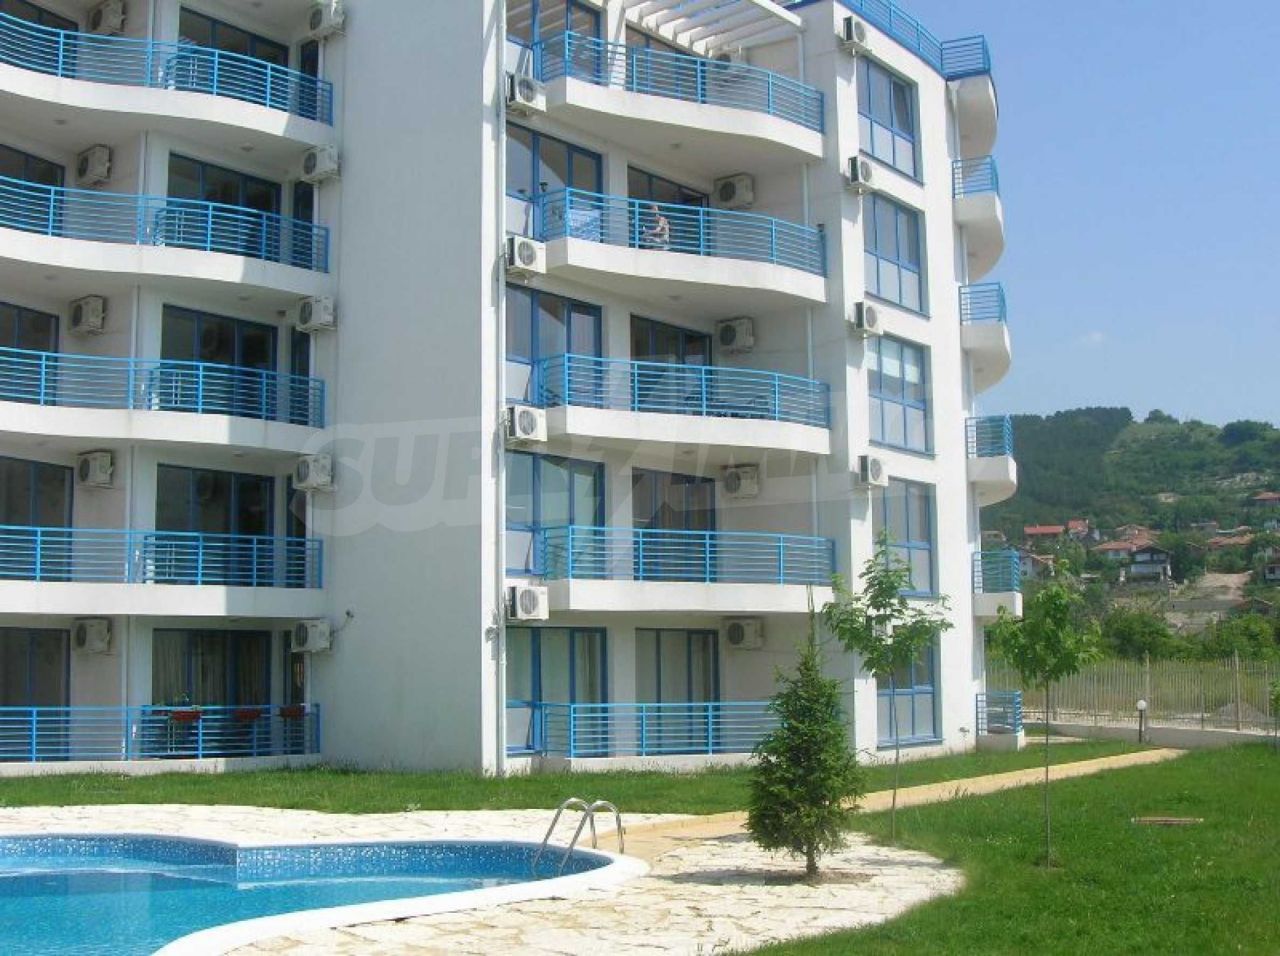 Apartment in Balchik, Bulgaria, 85.89 sq.m - picture 1